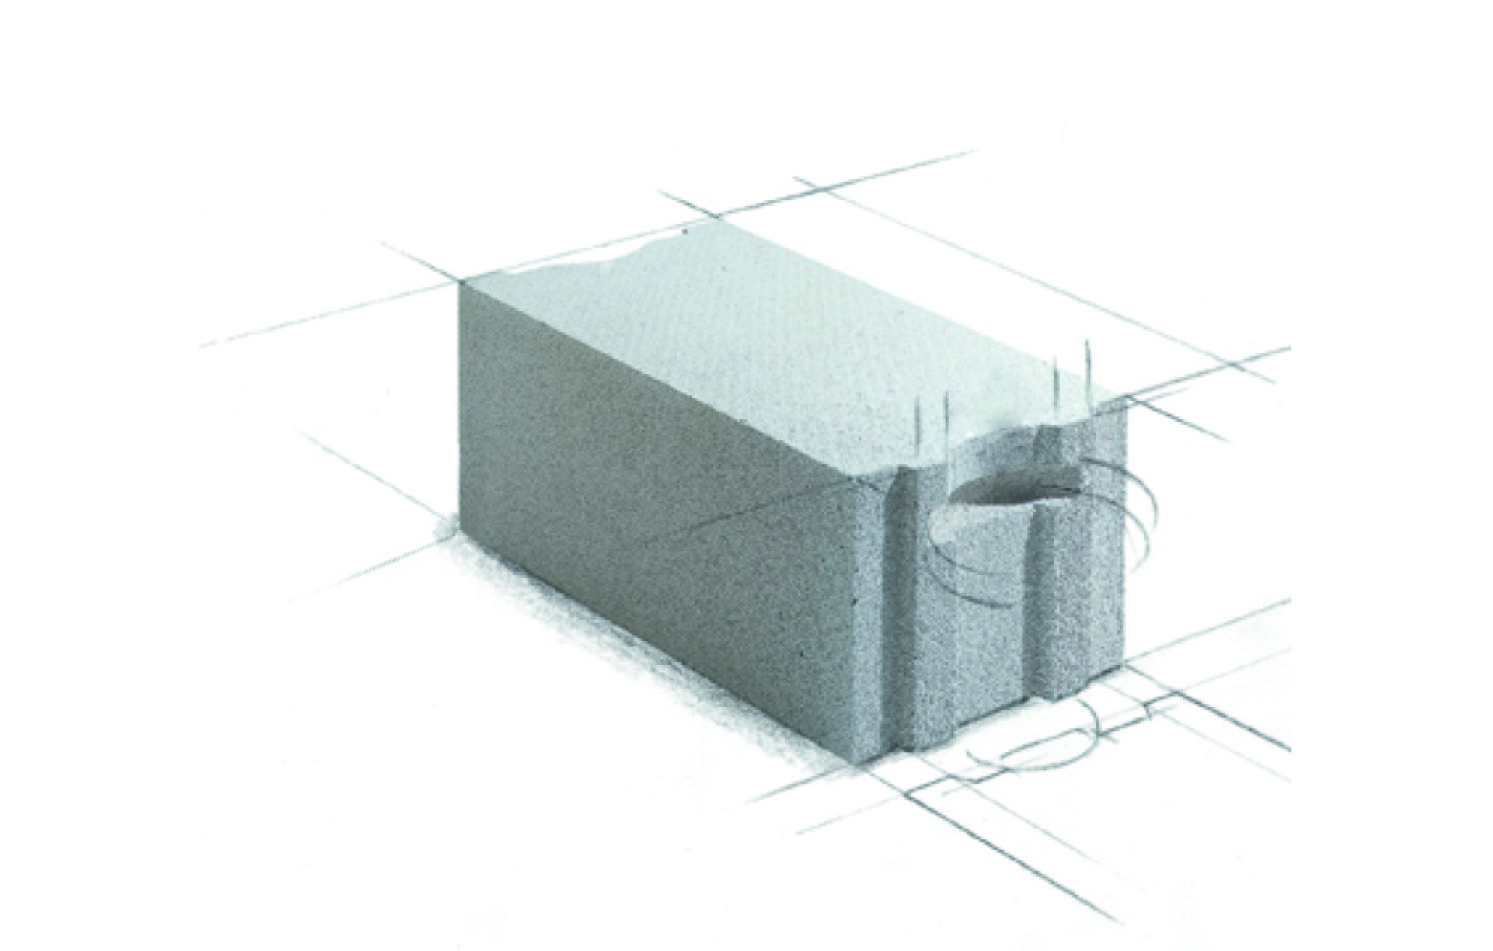 Xella Internațional Ytong este marcă înregistrată a Xella Group, cel mai important producător mondial de materiale de construcții pentru zidărie din domeniul betonului celular autoclavizat.